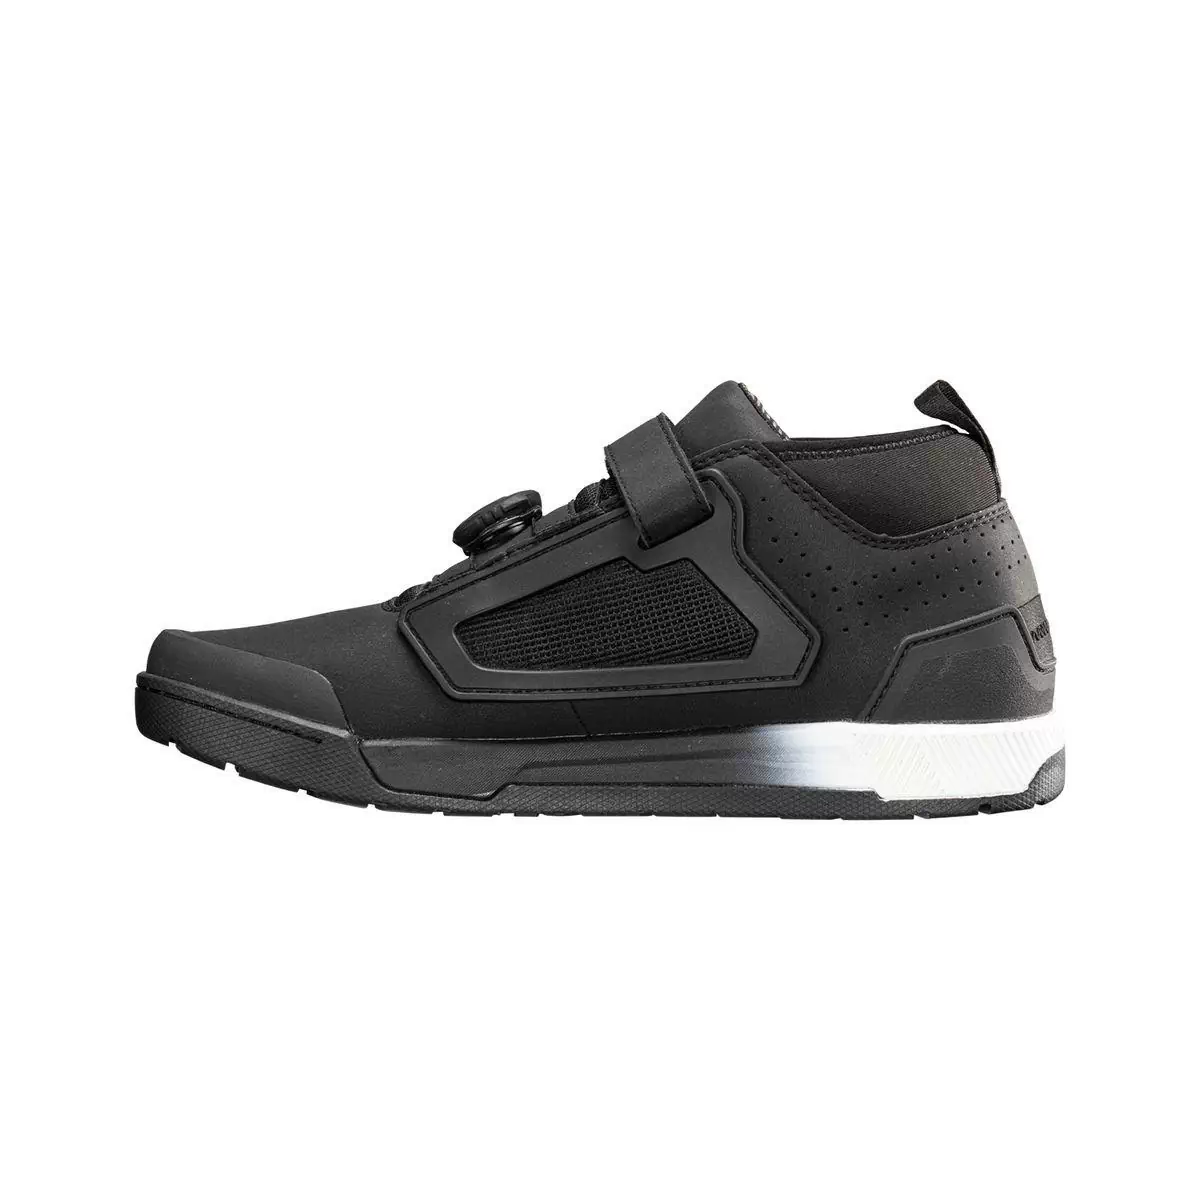 Chaussures VTT Pro Flat 3.0 noir taille 38,5 #1